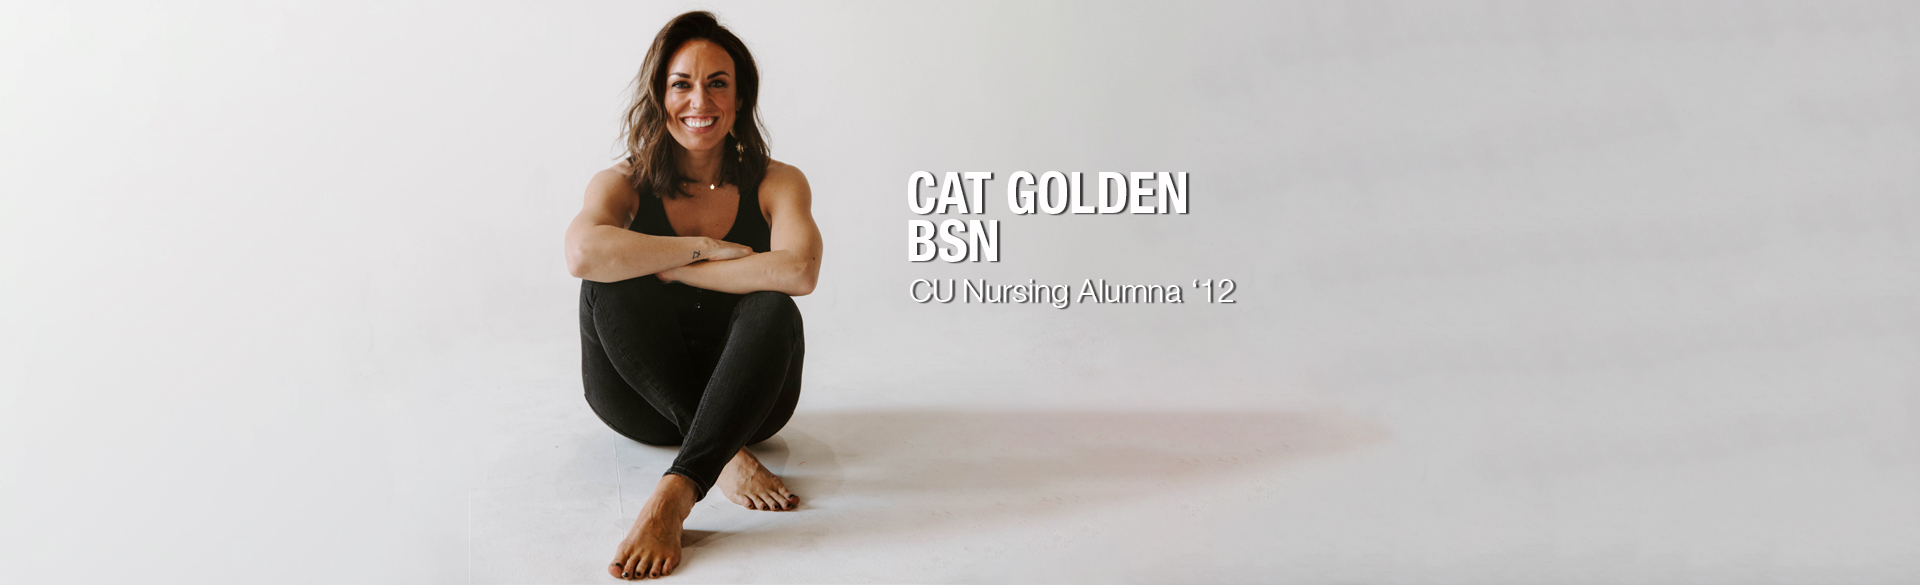 CU Nursing Alumna Cat Golden '12